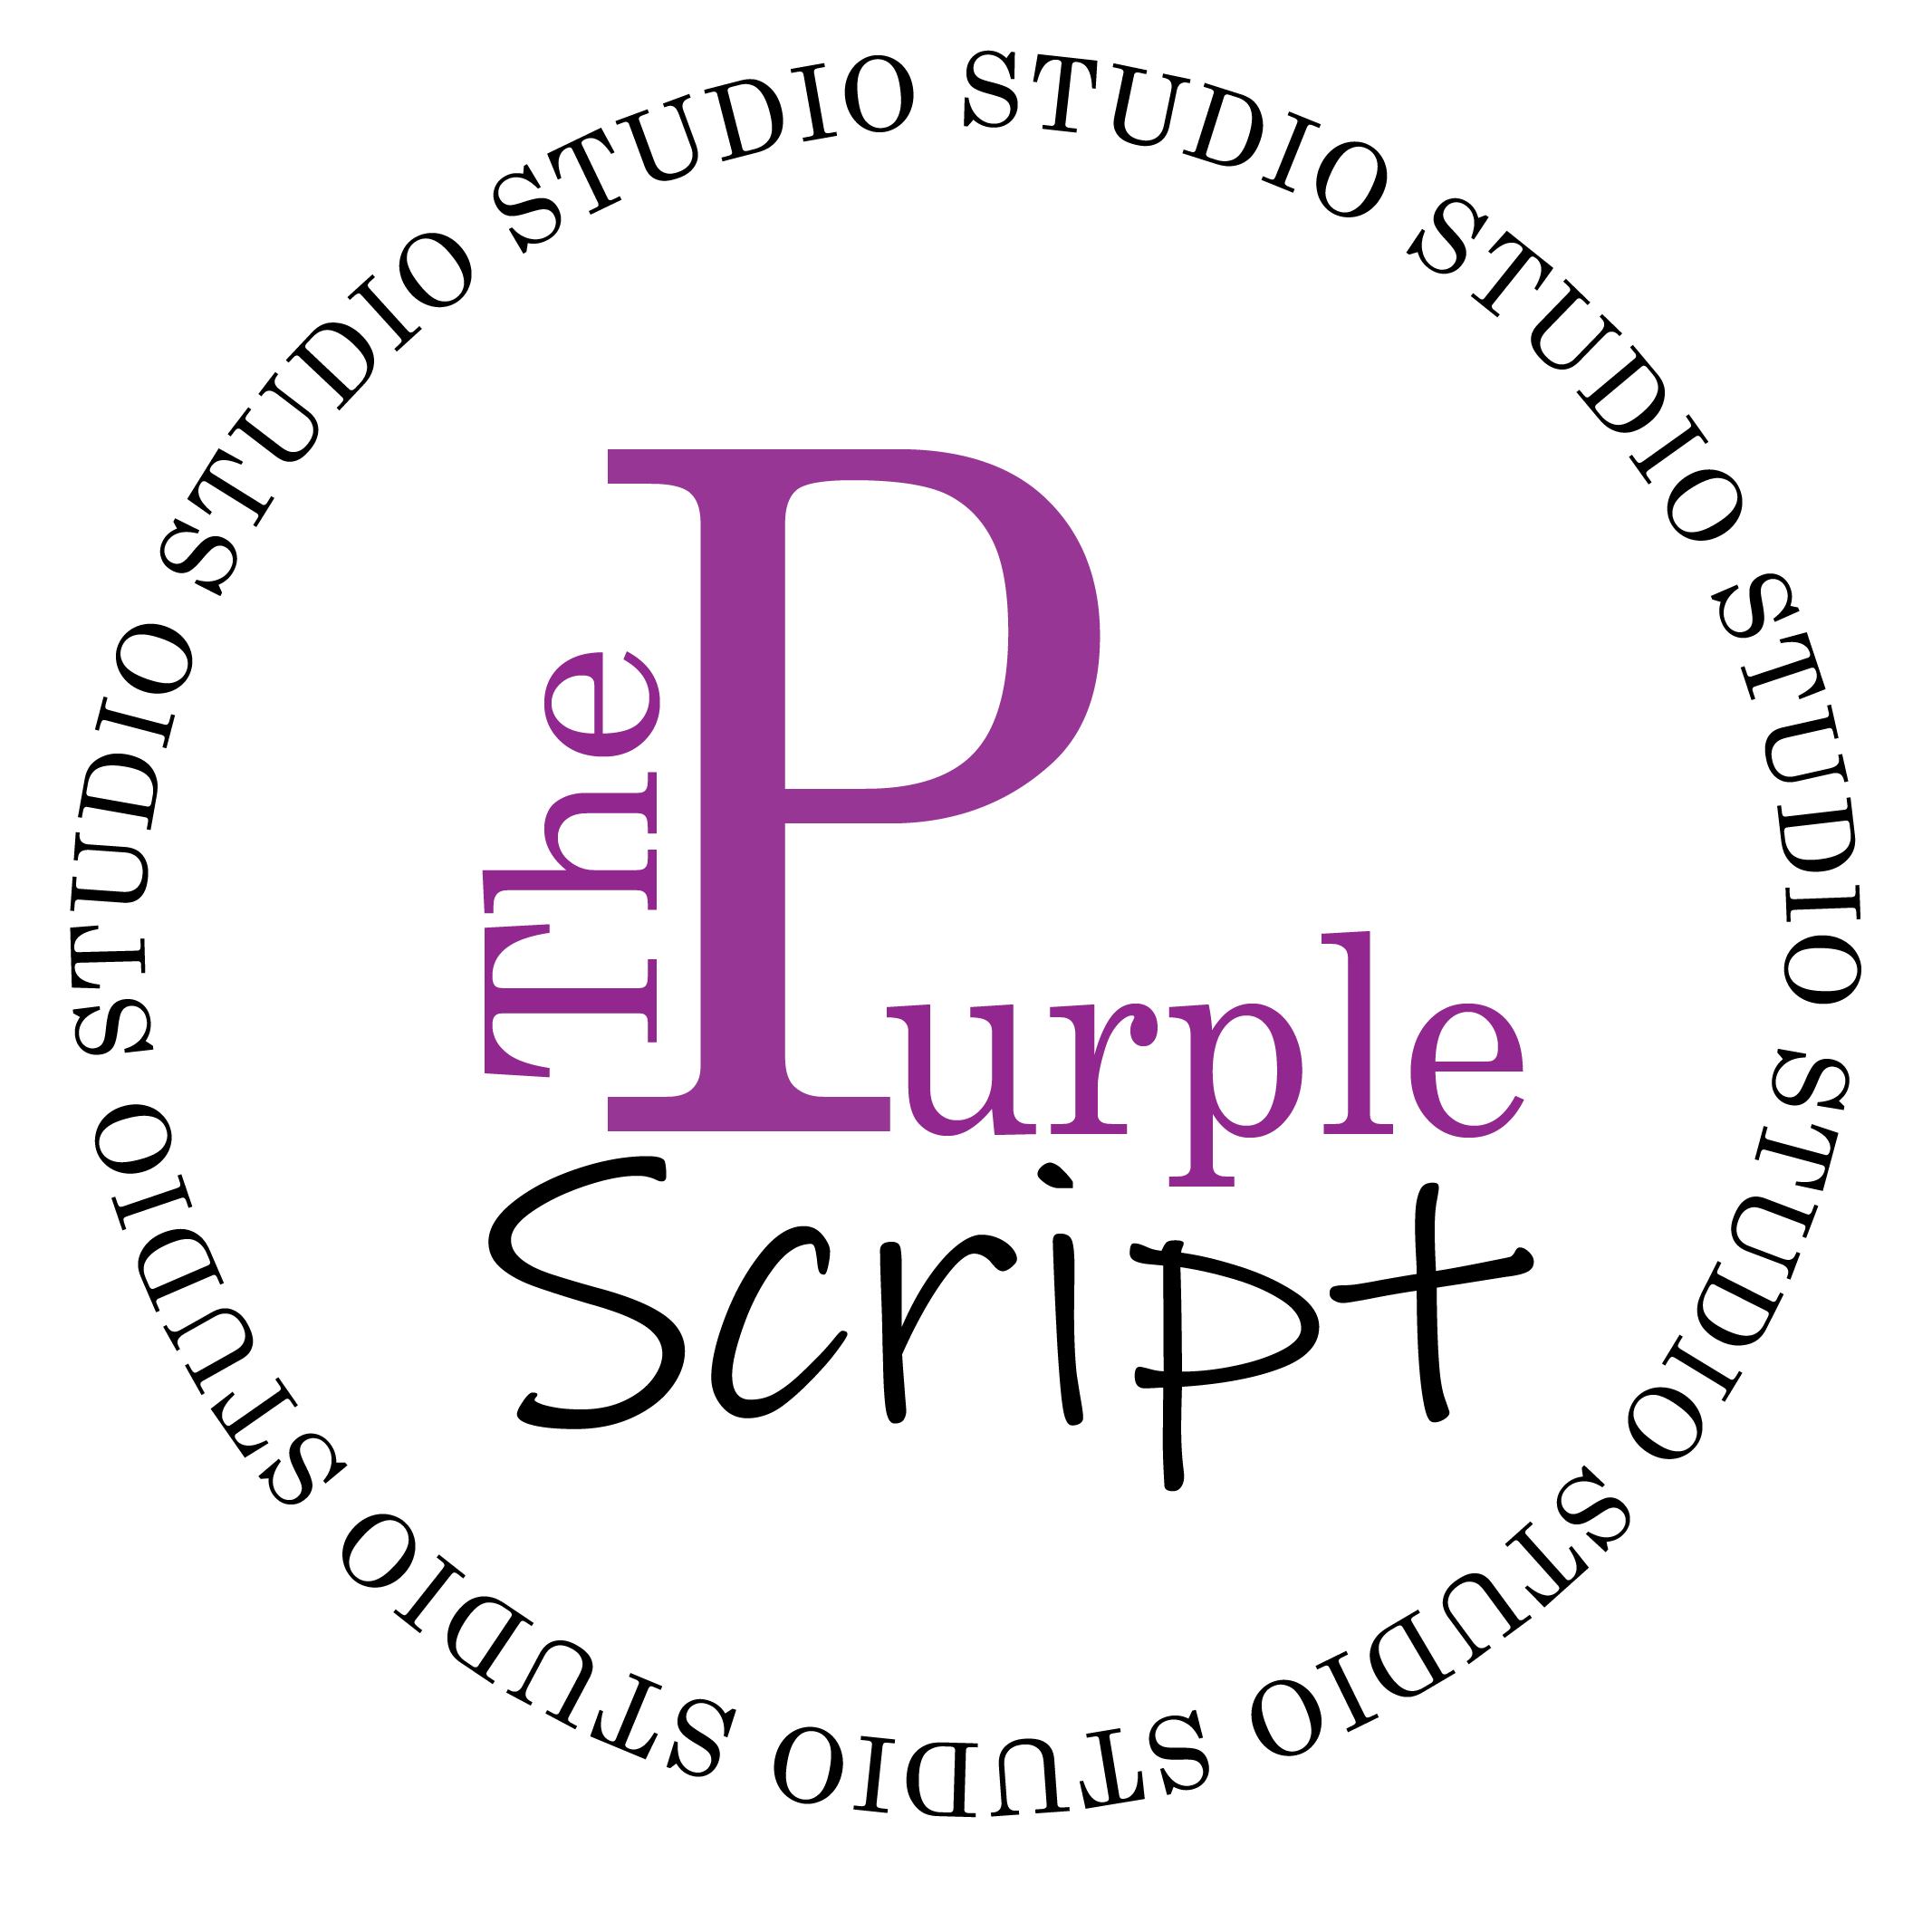 The Purple Script Studio